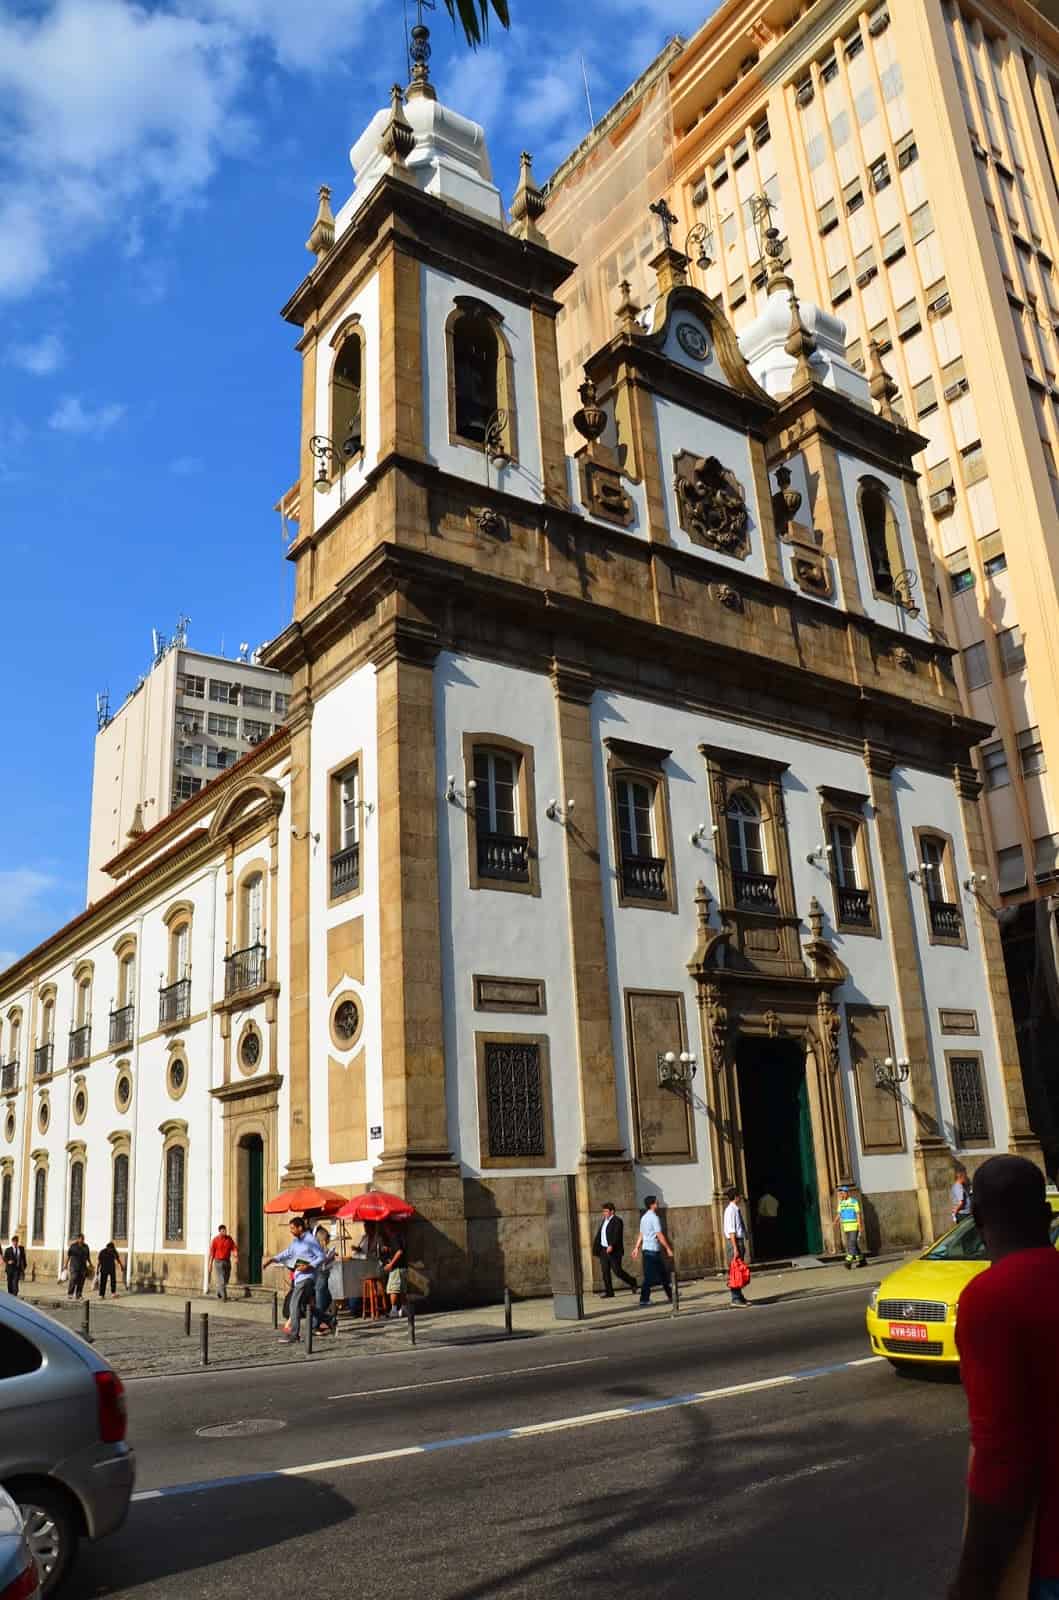 Igreja de São José in Rio de Janeiro, Brazil